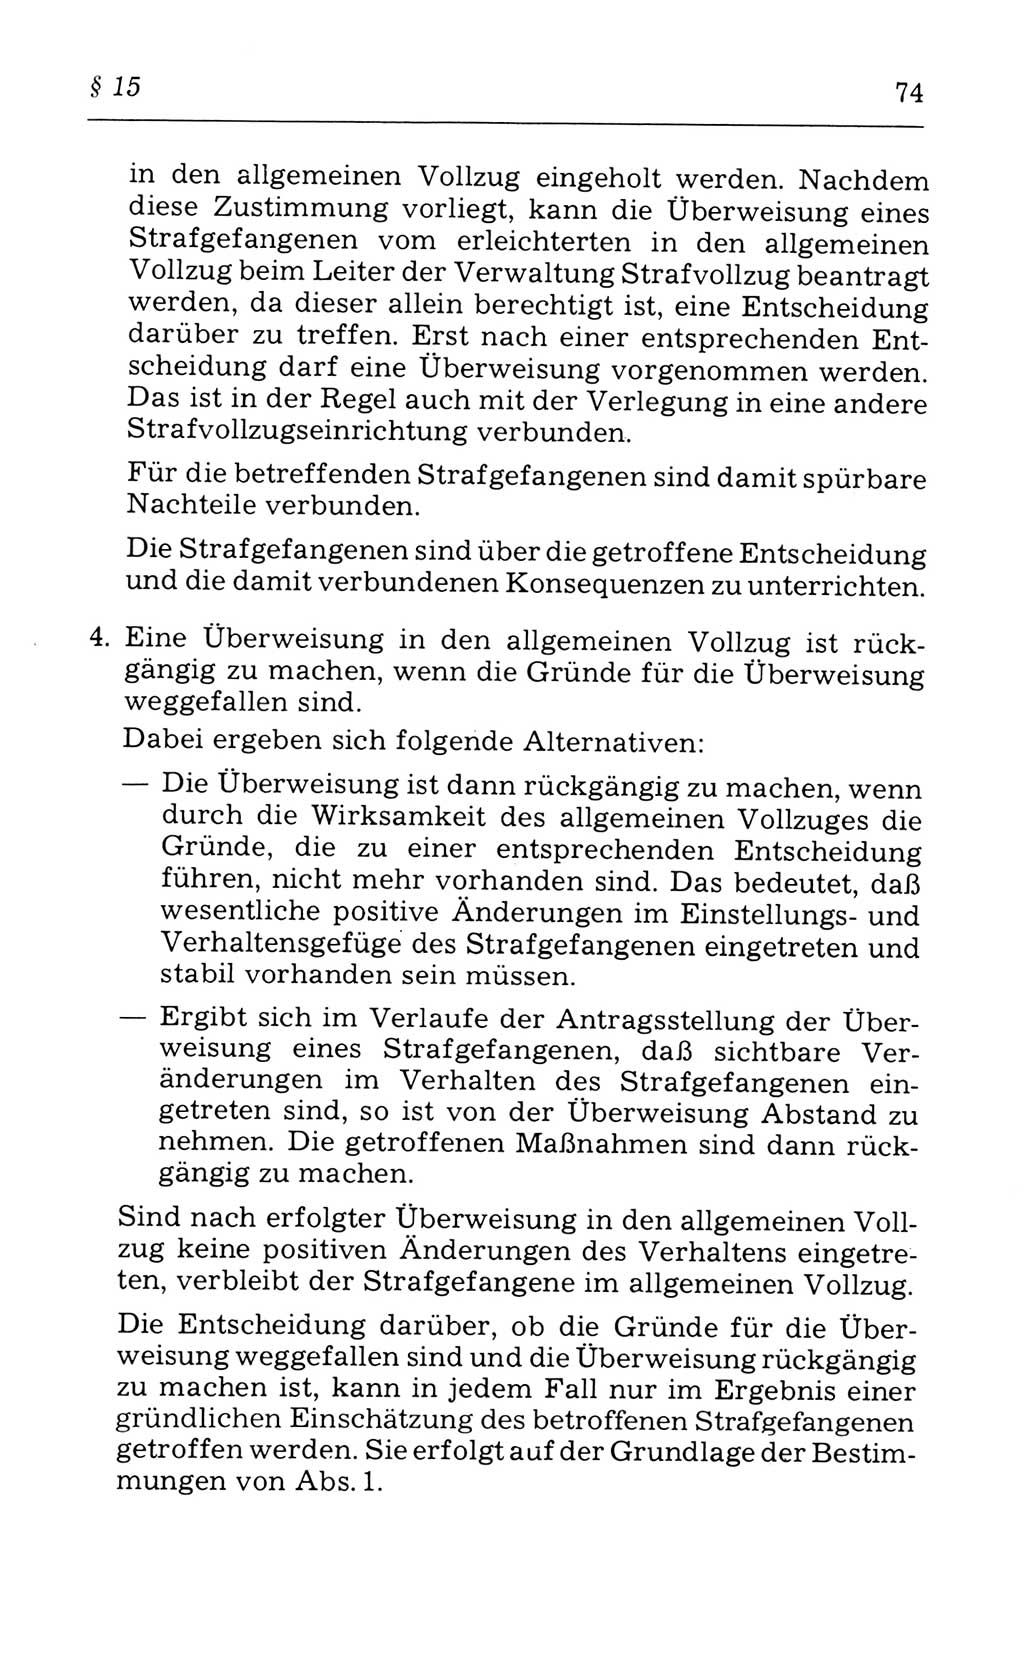 Kommentar zum Strafvollzugsgesetz [(StVG) Deutsche Demokratische Republik (DDR)] 1980, Seite 74 (Komm. StVG DDR 1980, S. 74)